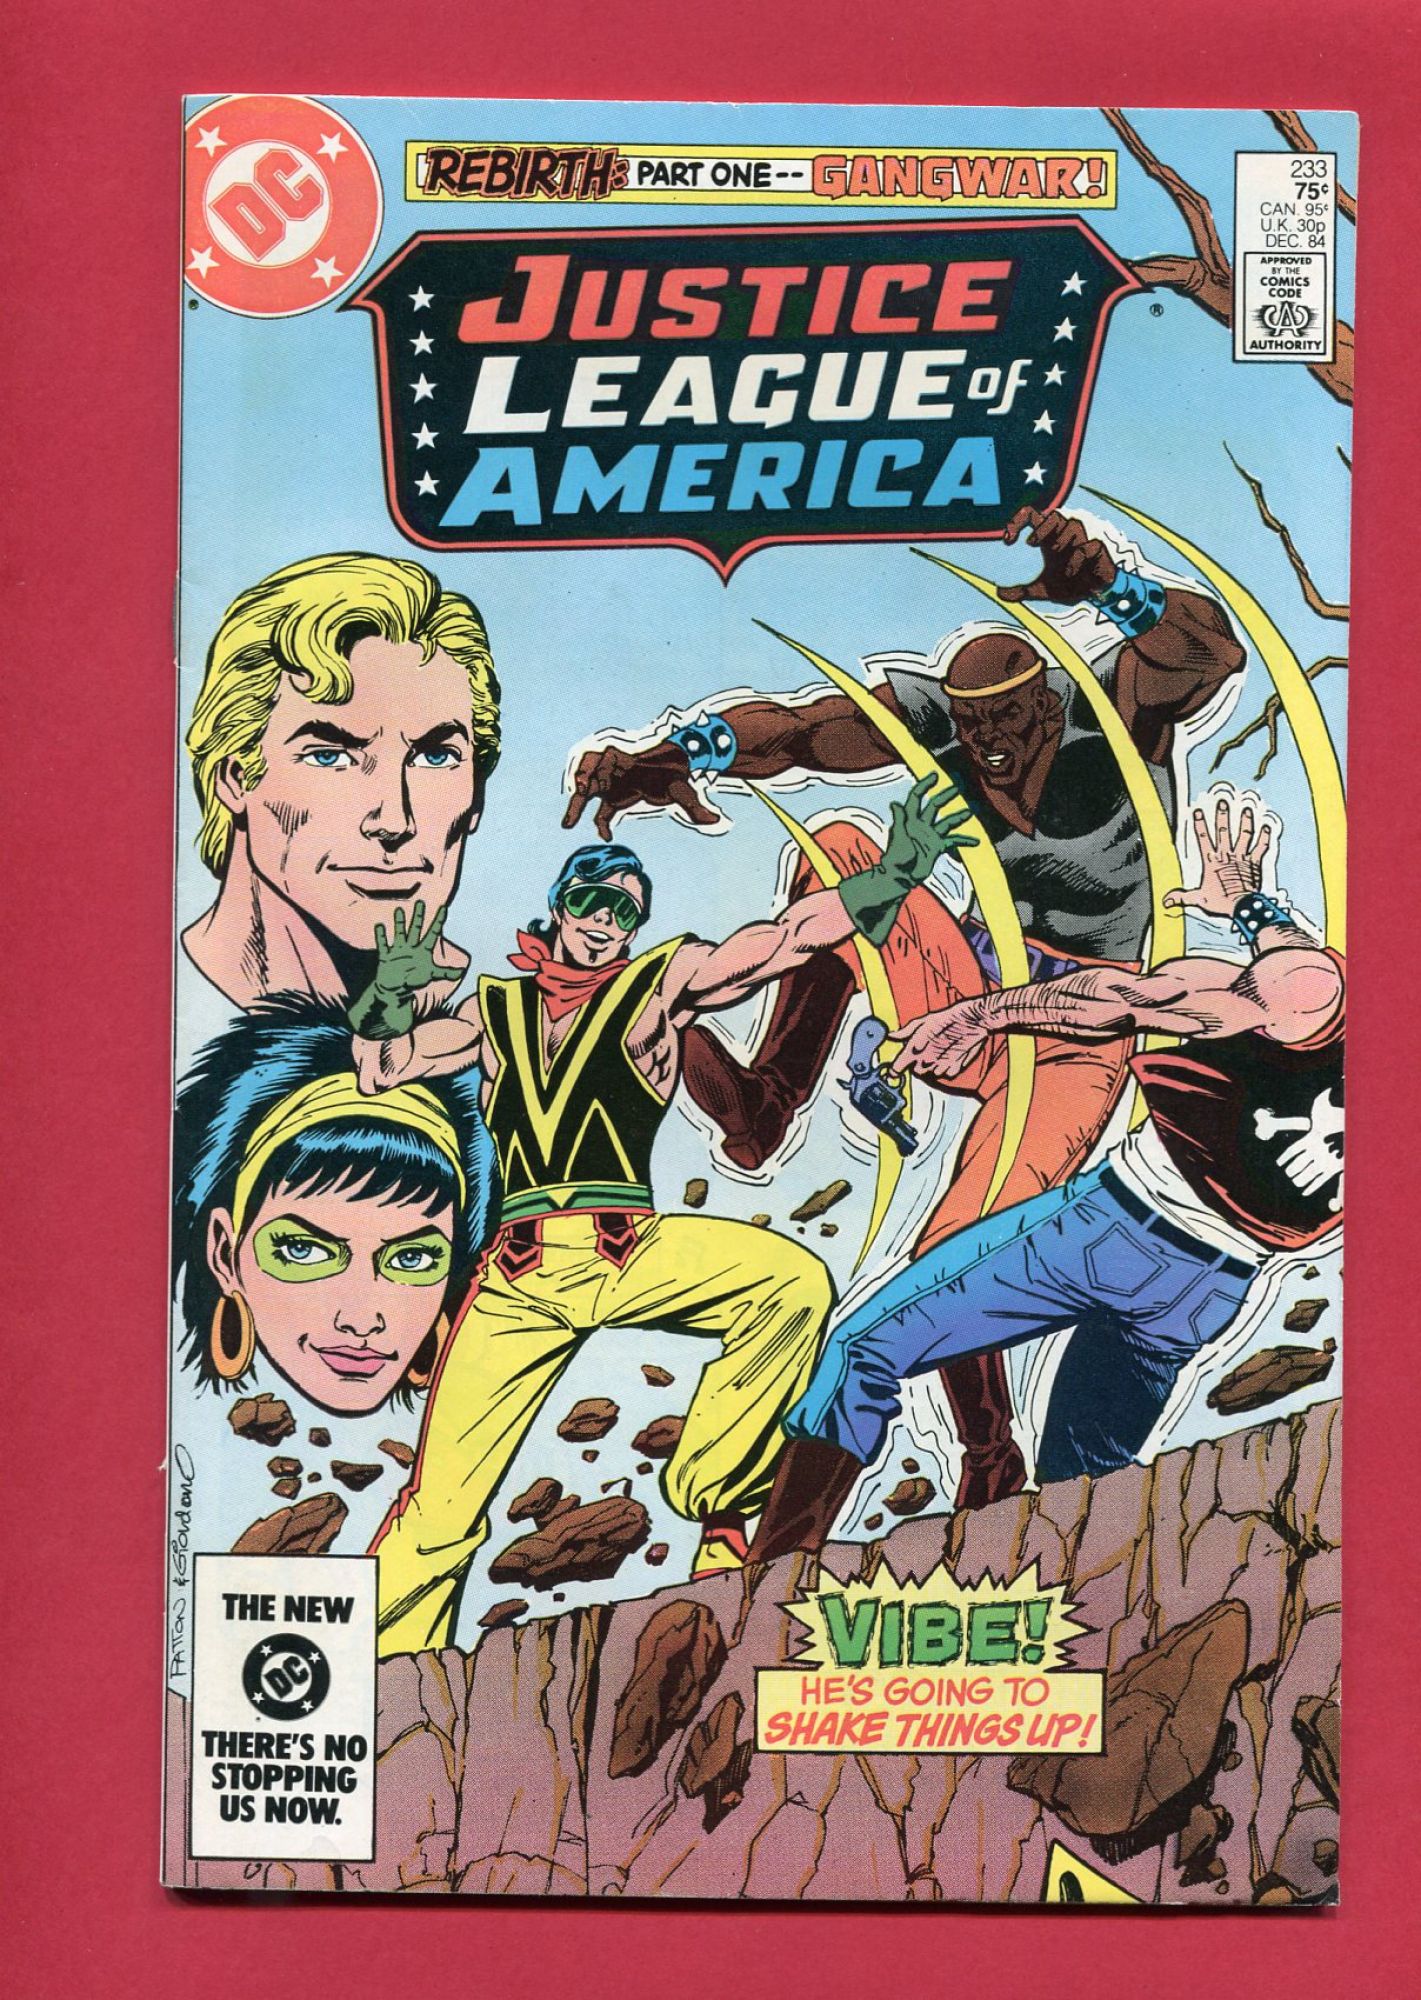 Justice League of America (Volume 1 1960) #233, Dec 1984, 9.2 NM-